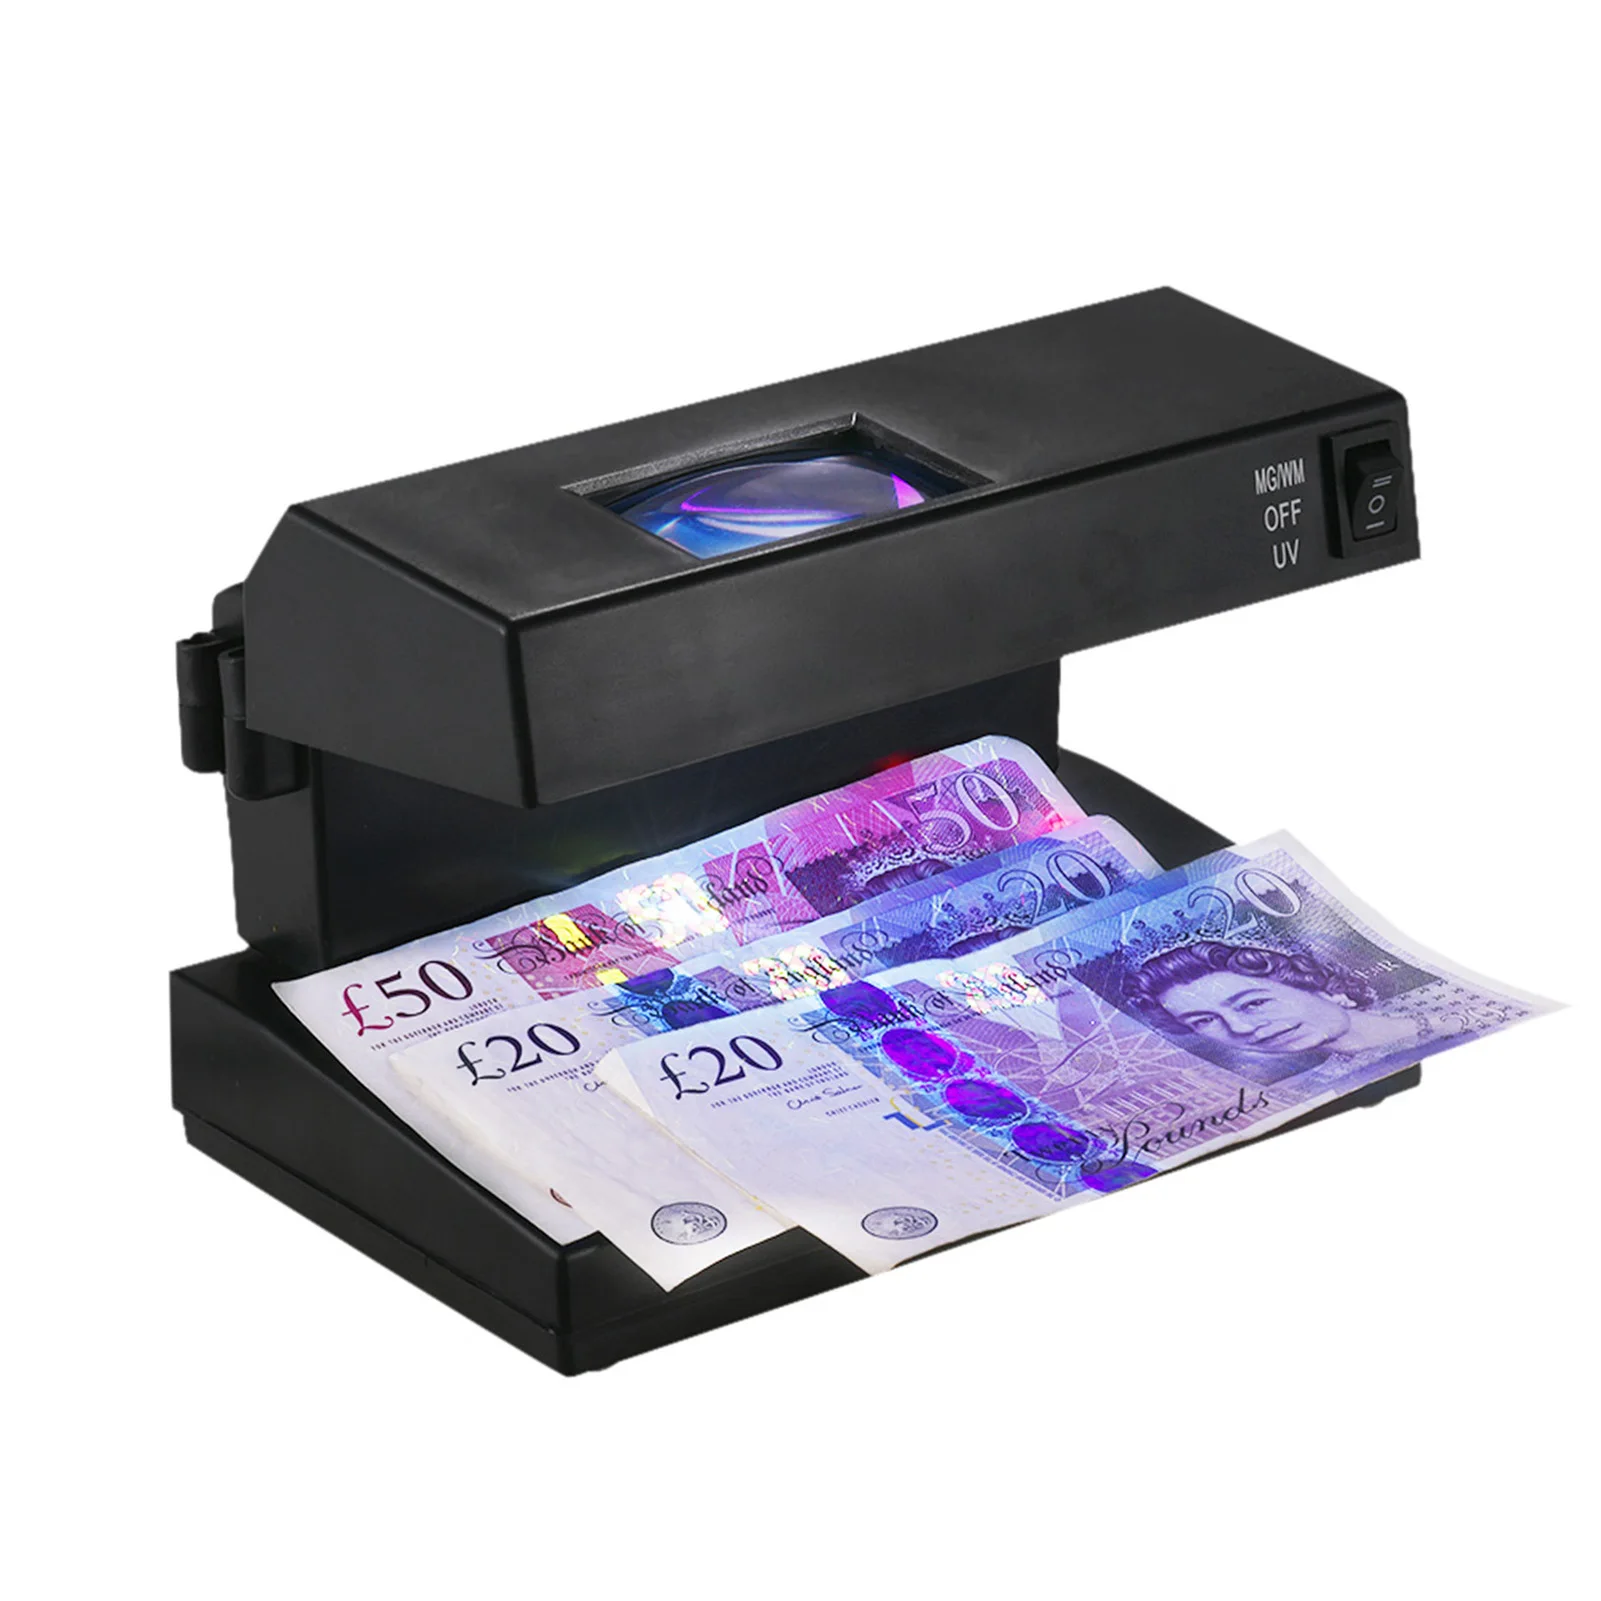 Tragbare Desktop gefälschte Rechnung gefälschte Ticket Detektor Bargeld Währung Banknoten Checker Maschine UV-UV-Lupe geschmiedet